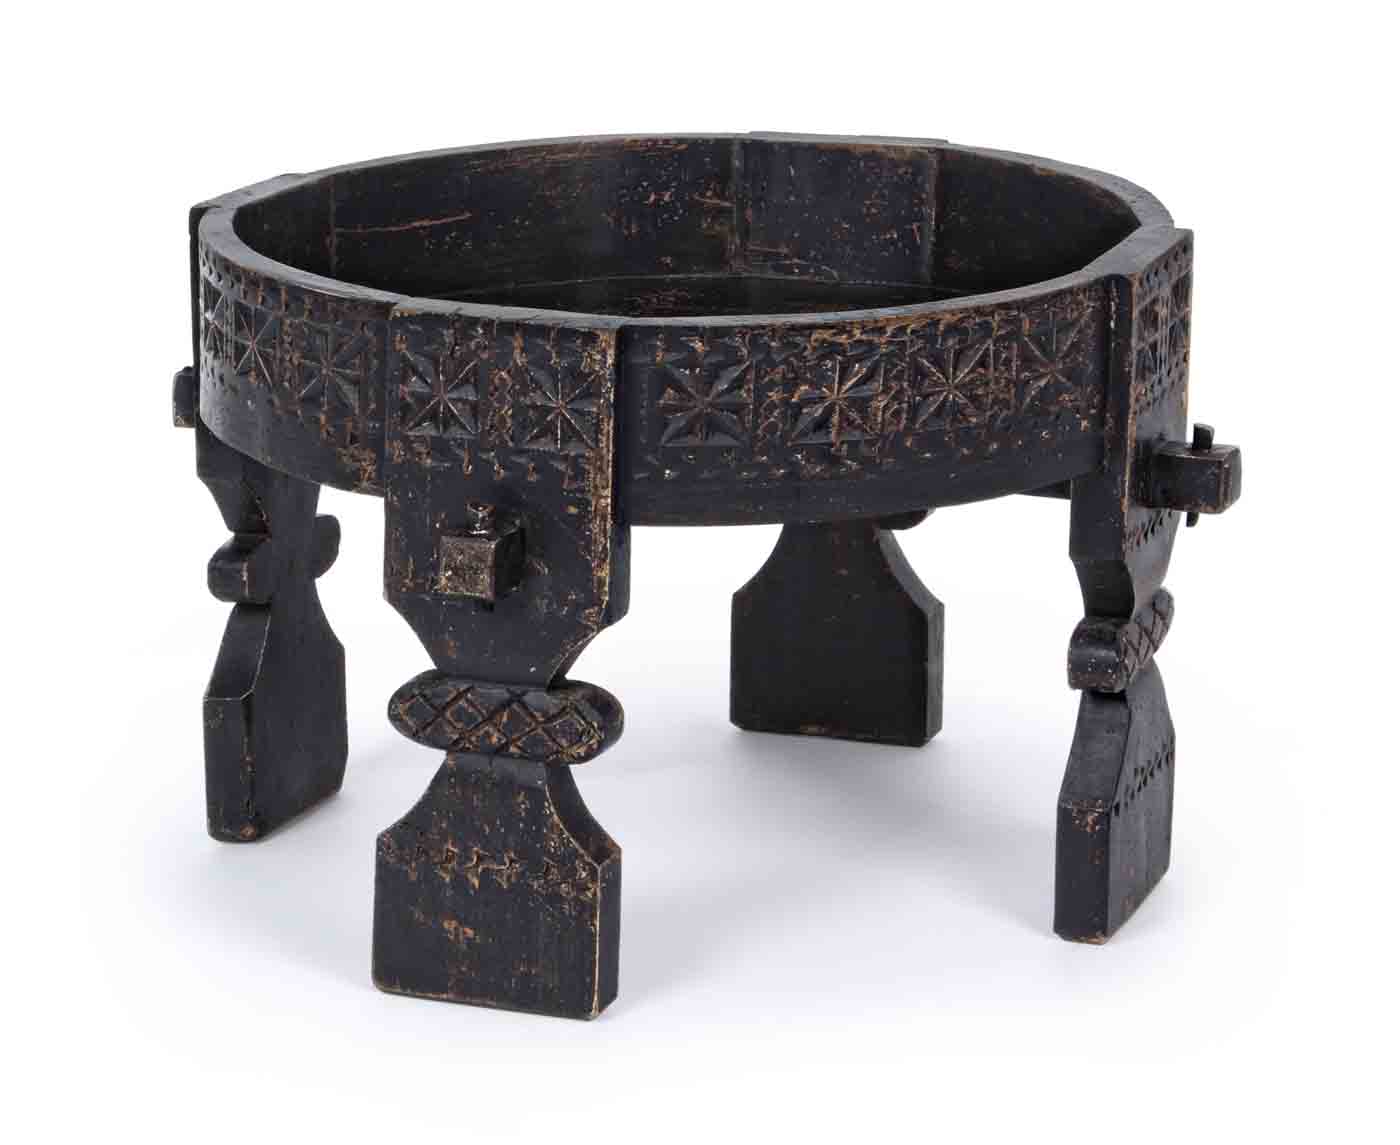 Das Skandinavische Design des Beistelltisches Yasir überzeugt. Gefertigt wurde der Tisch aus Mangoholz und hat per Hand eine Feinbearbeitung erhalten. Der Tisch ist in einem schwarzen Farbton.